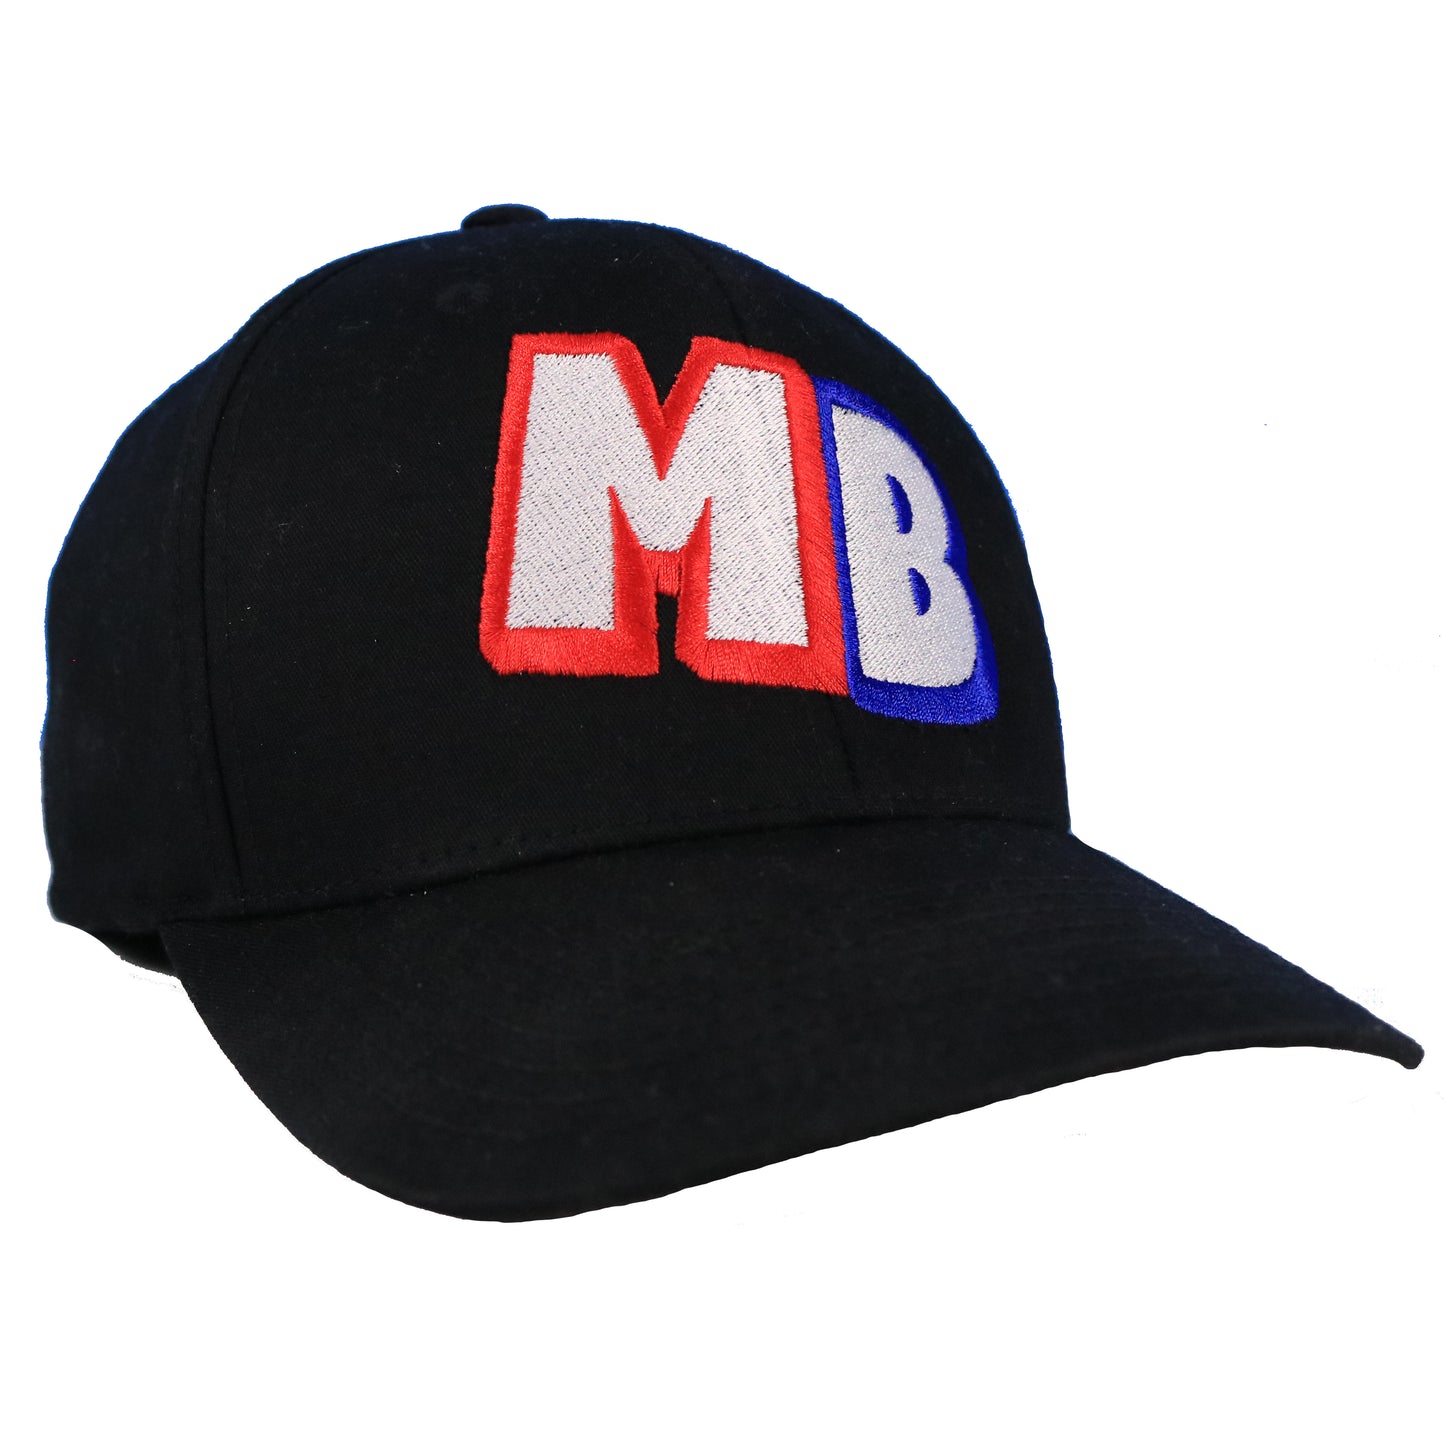 MB CLASSIC FLEX FIT HAT (BLACK) – MB Merch